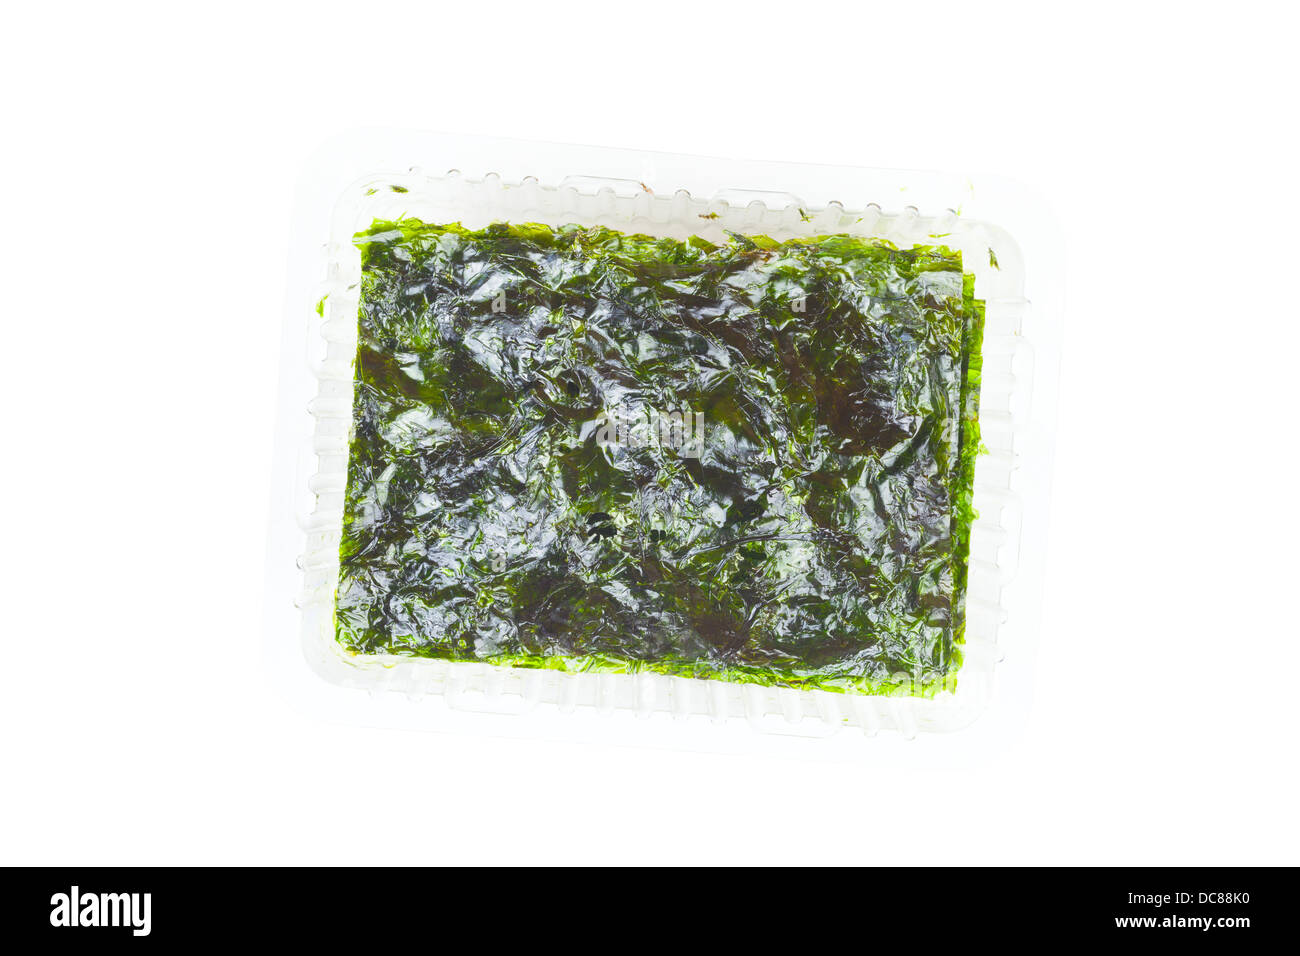 Ulva lactuca, algas marinas o lavamanos en un recipiente de plástico sobre un fondo blanco. Foto de stock